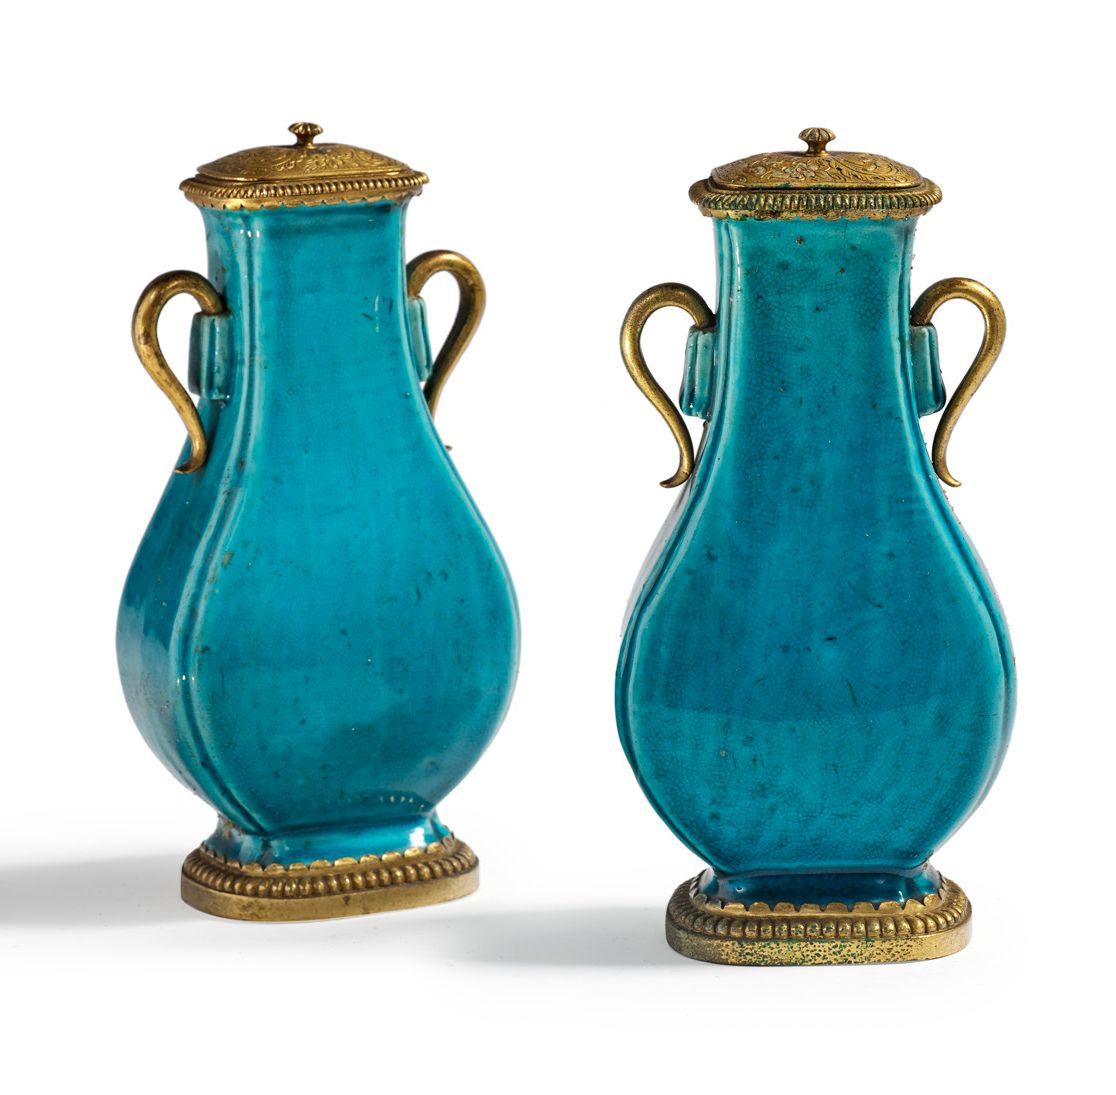 CHINE XVIIIe SIÈCLE, PÉRIODE KANGXI (1661 - 1722) 
Paire de vases piriformes en &hellip;